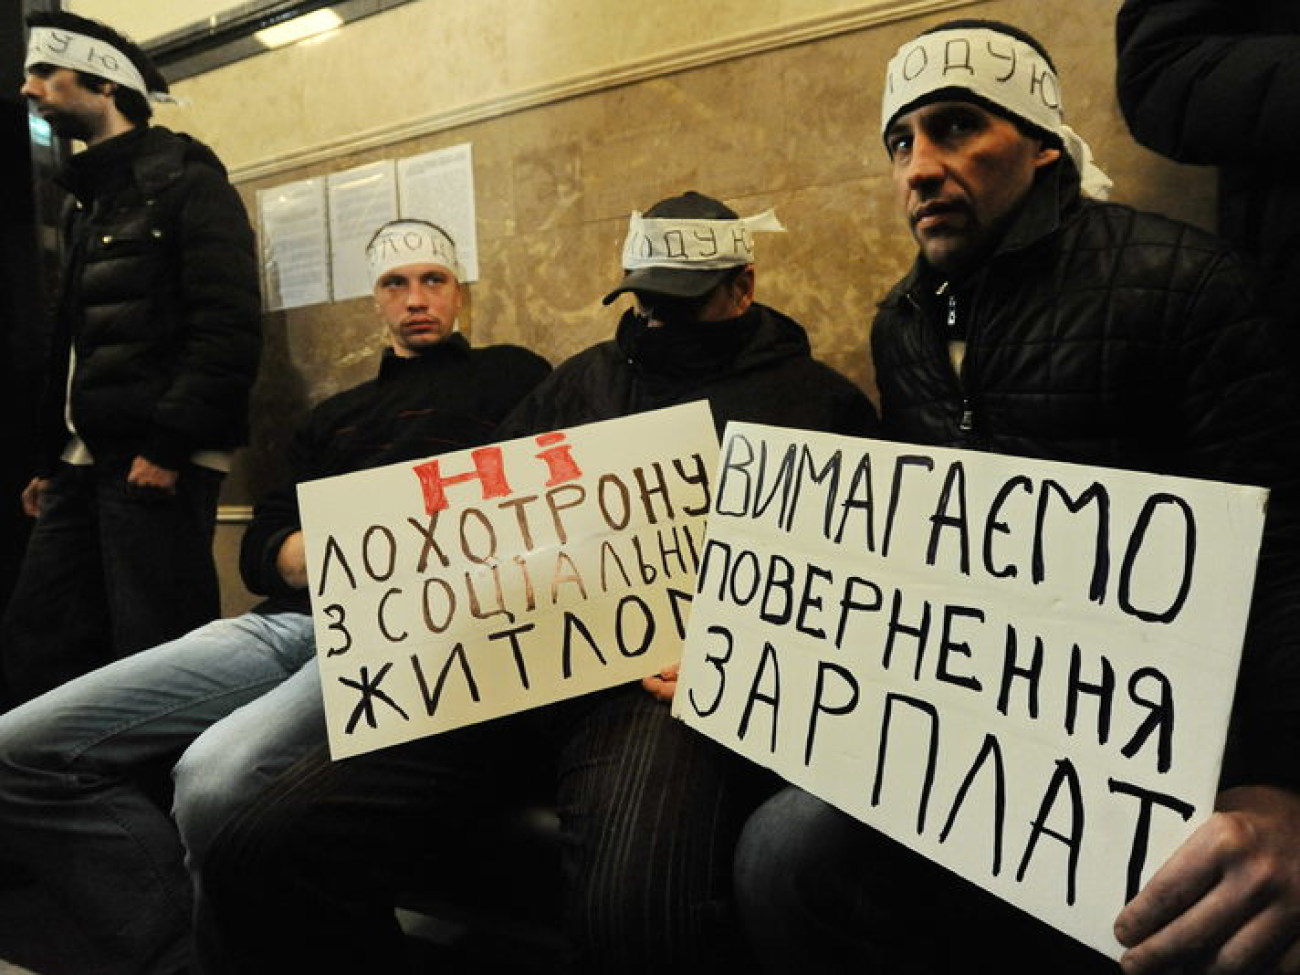 7 строителей голодают, требуя в мэрии зарплаты, 15 марта 2013г.